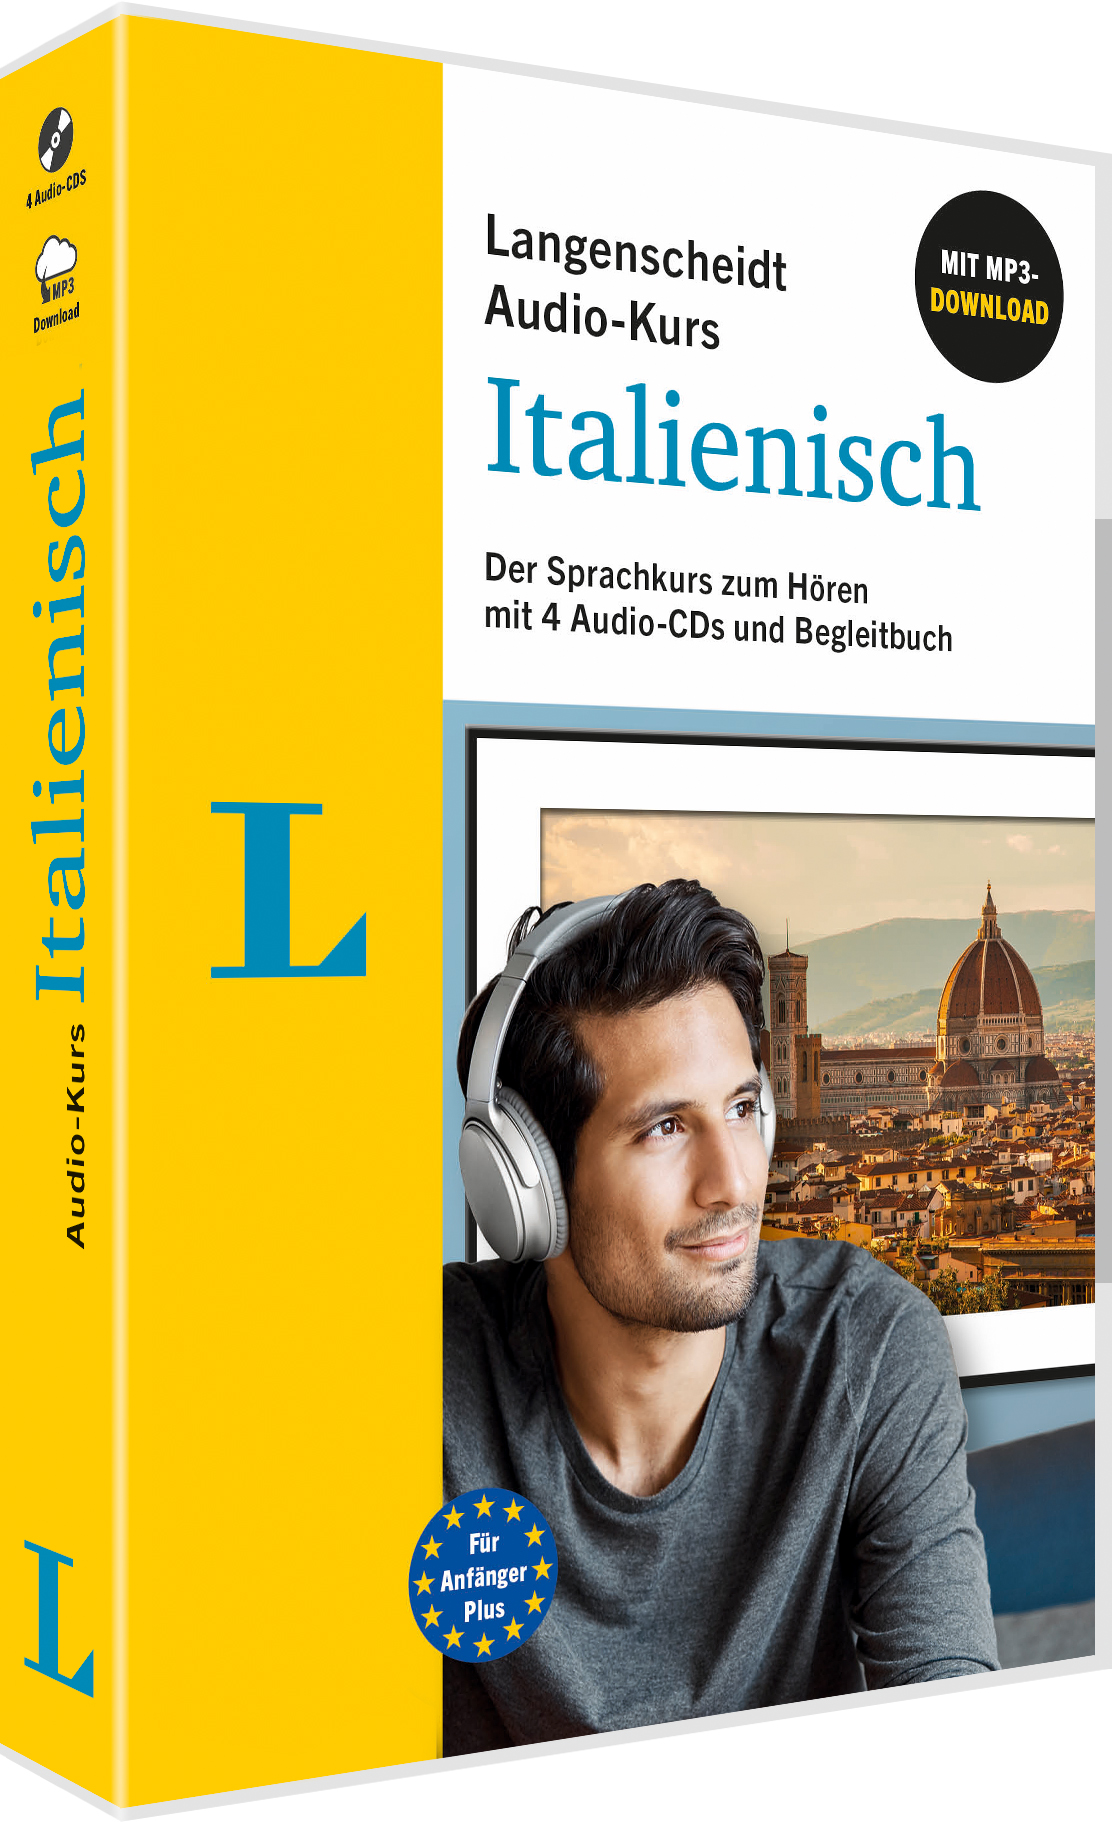 Langenscheidt Audio-Kurs Italienisch